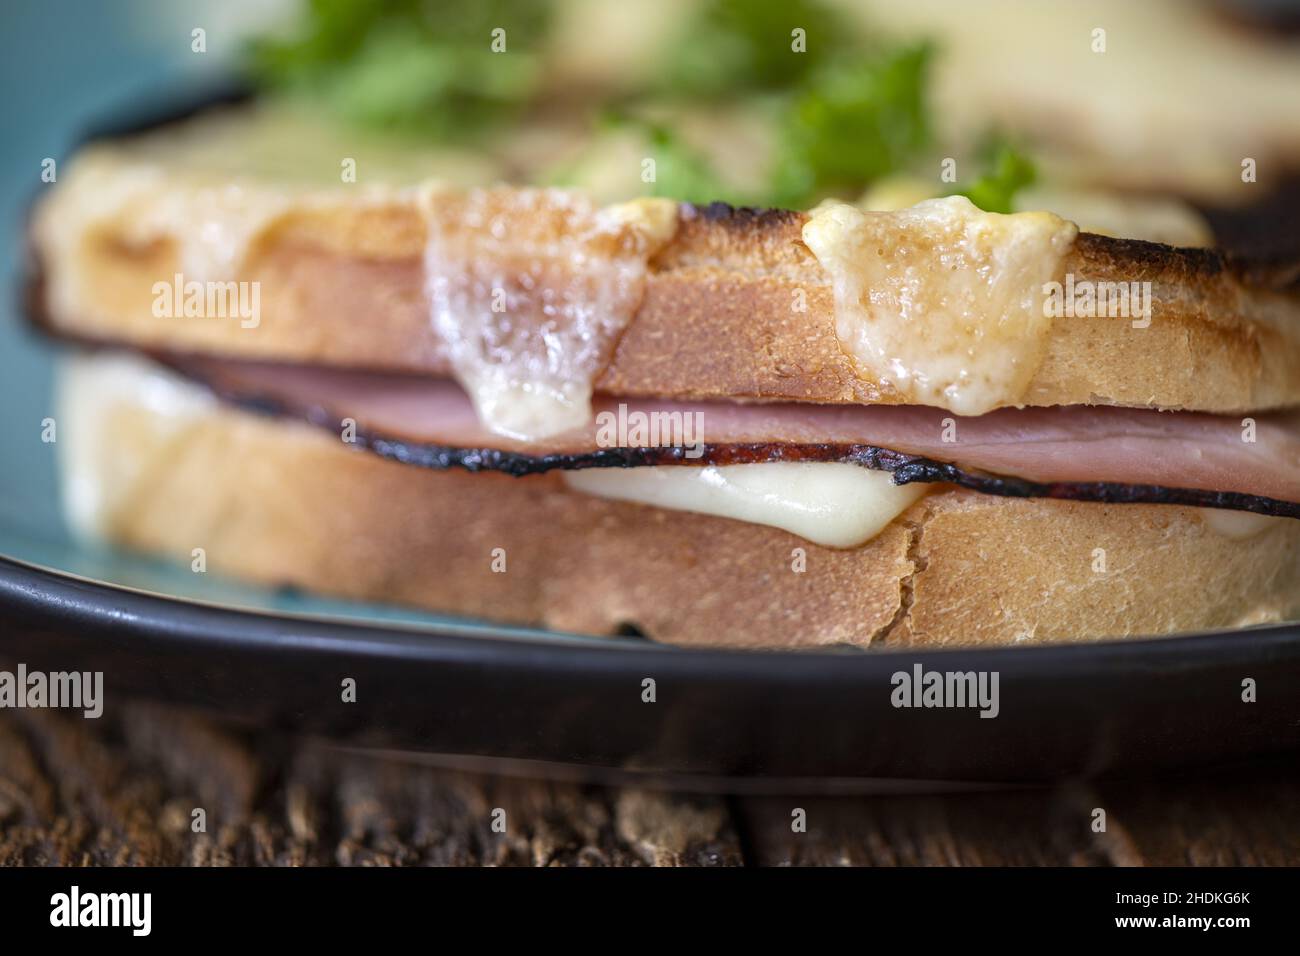 sandwich, croque, sandwich au jambon, sandwich Banque D'Images